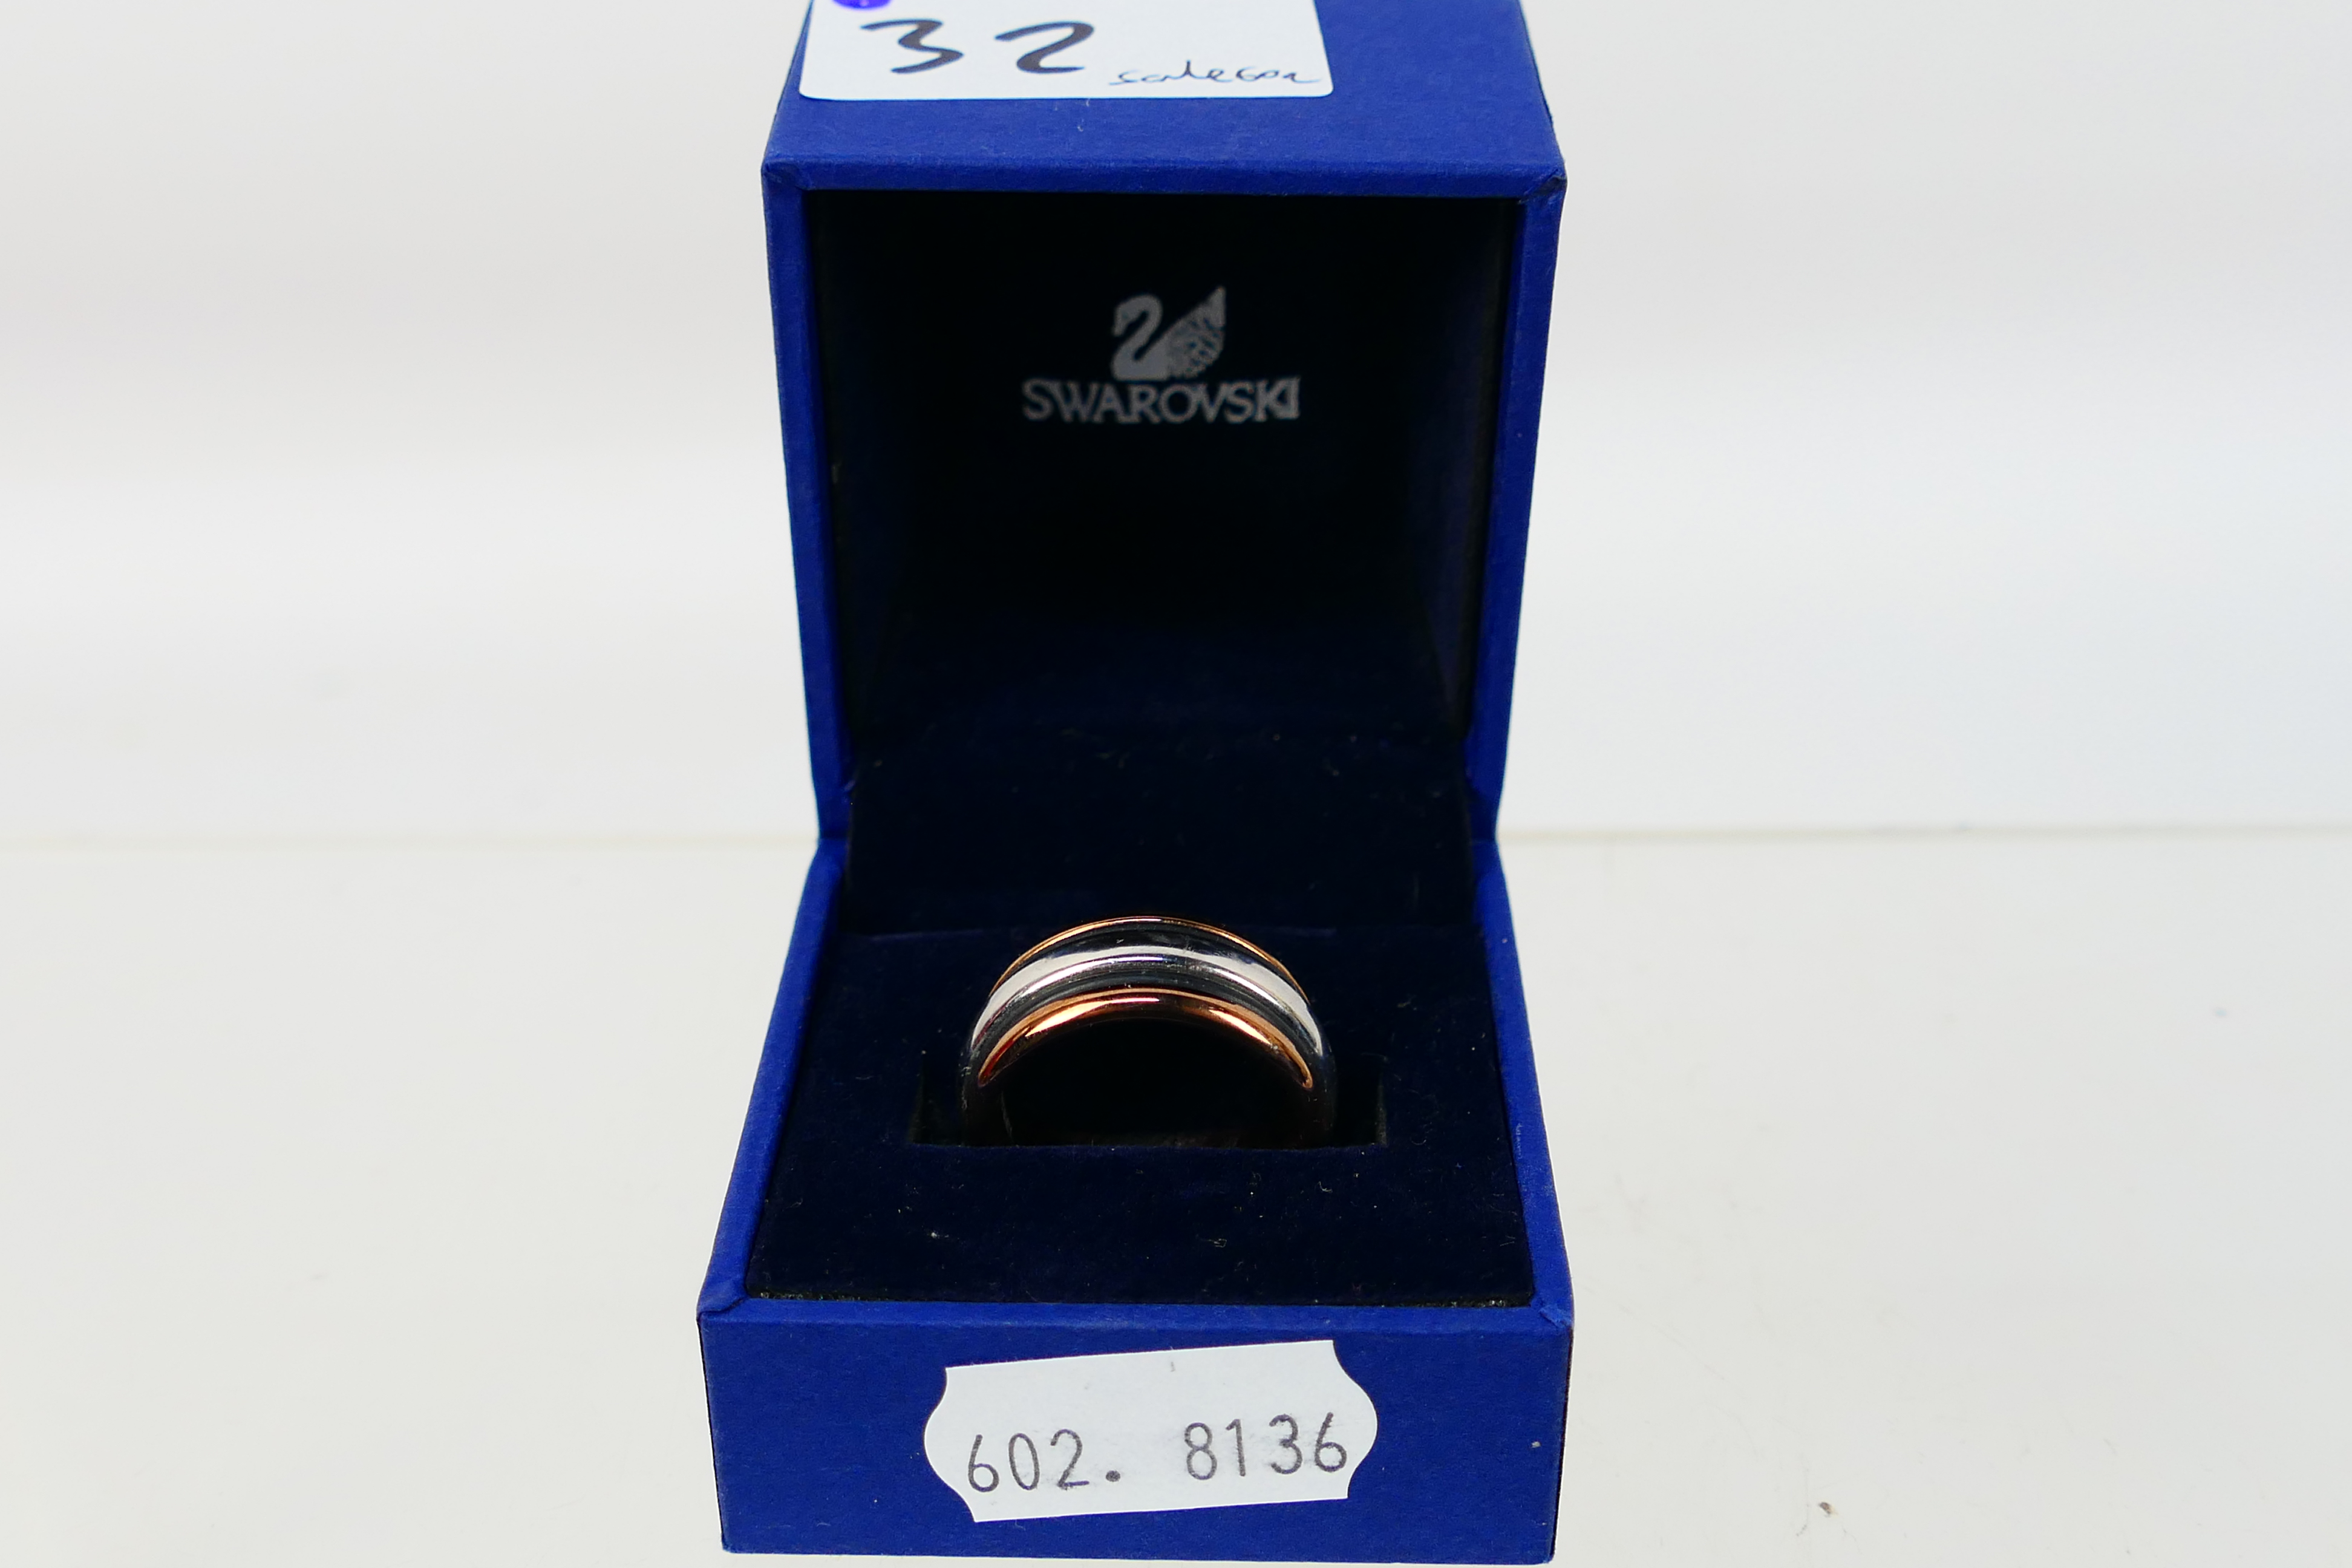 Swarovski, Elixa - A stainless steel Elixa rose gold coloured ring within a Swarovski box. - Image 4 of 4